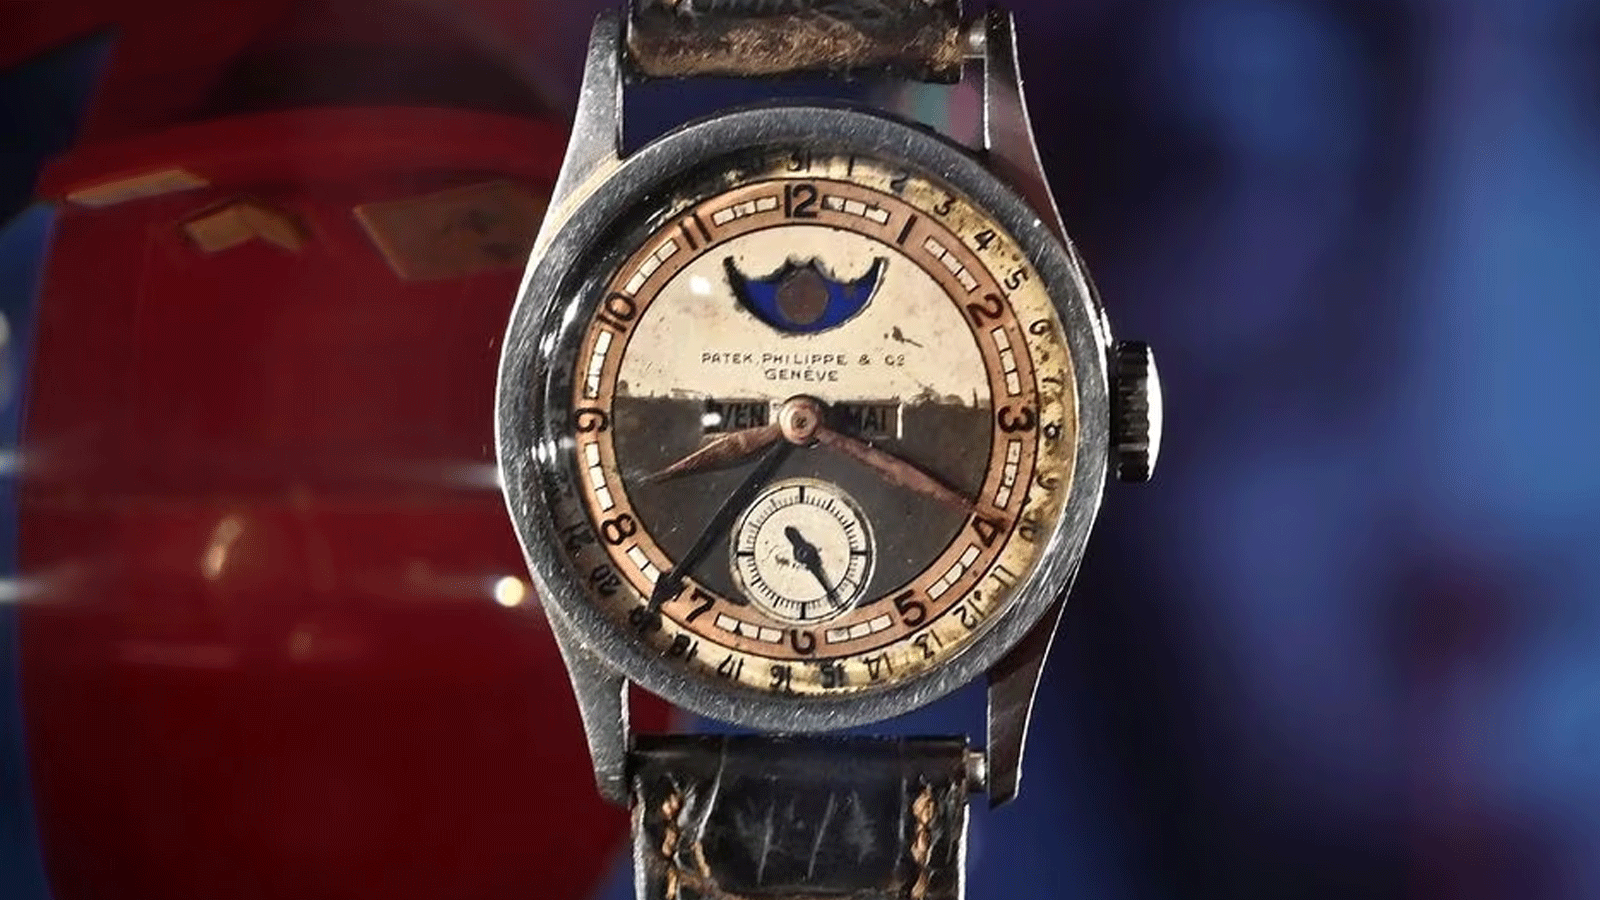  ساعة Patek Philippe التي كانت مملوكة لآخر إمبراطور صيني بويي، بيعت بأكثر من 5 ملايين دولار في مزاد ، تم تصويرها في هونغ كونغ في 23 أيار\مايو 2023